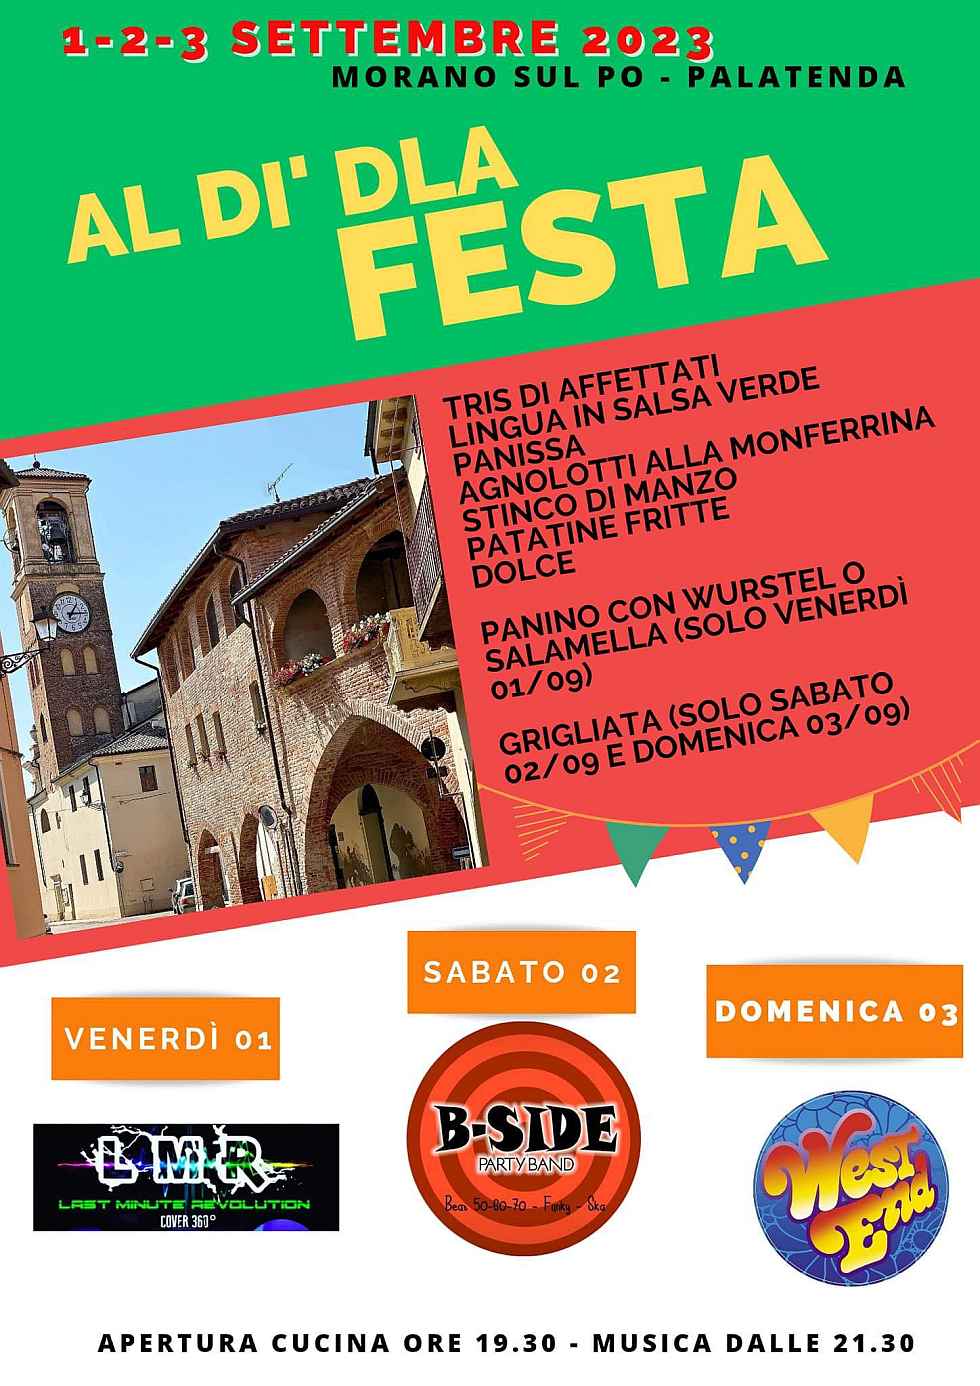 Morano sul Po (AL)
"Al di 'dla festa"
1-2-3 Settembre 2023